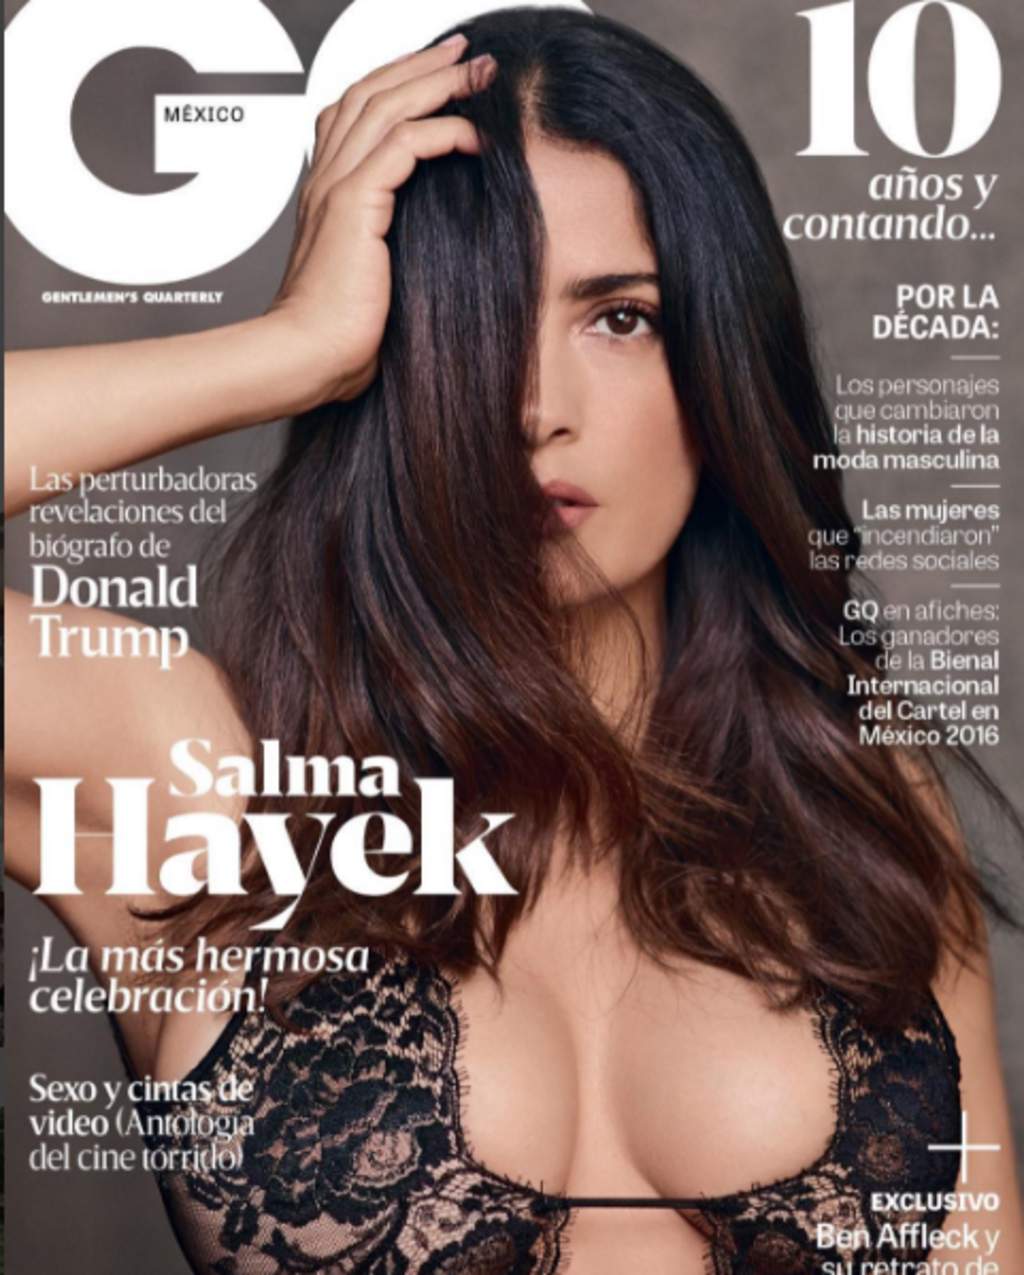 Salma es protagonista de la portada del décimo aniversario de “GQ” México, según informó ella misma para acompañar la fotografía. (ESPECIAL)